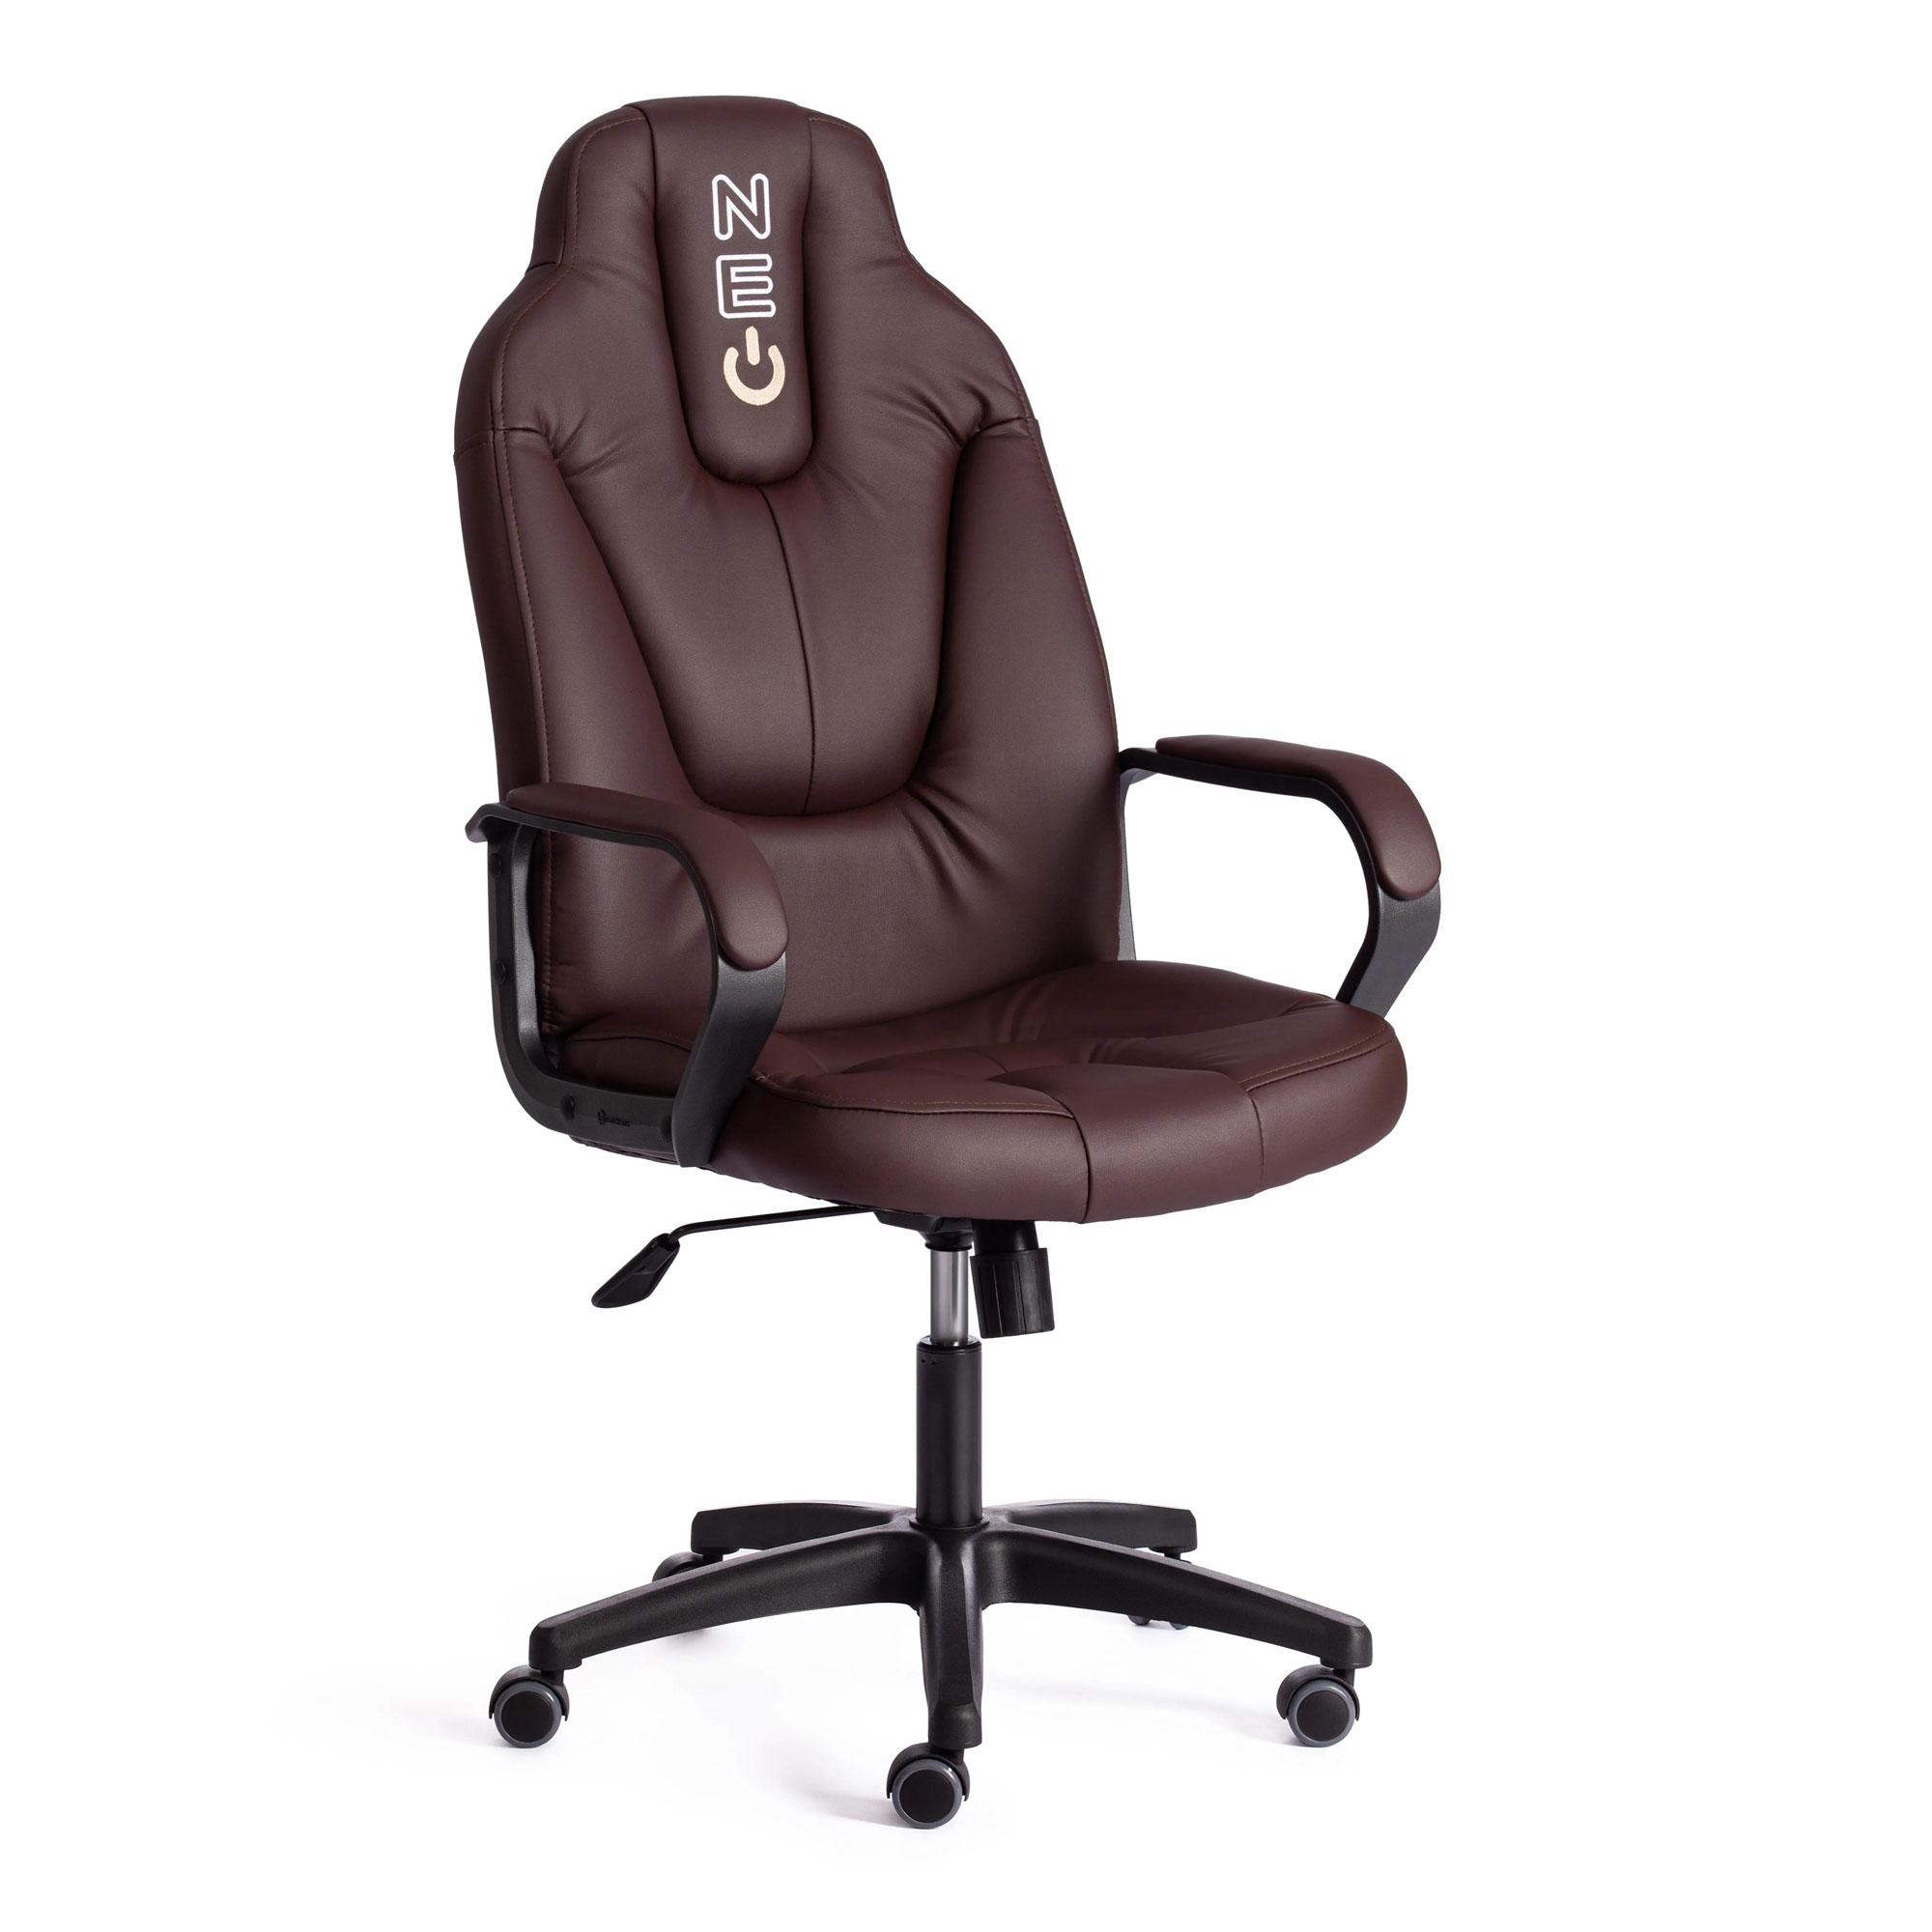 Кресло компьютерное TC Neo искусственная кожа коричневое 64х49х122 см кресло компьютерное tc neo искусственная кожа коричневое с бежевым 64х49х122 см